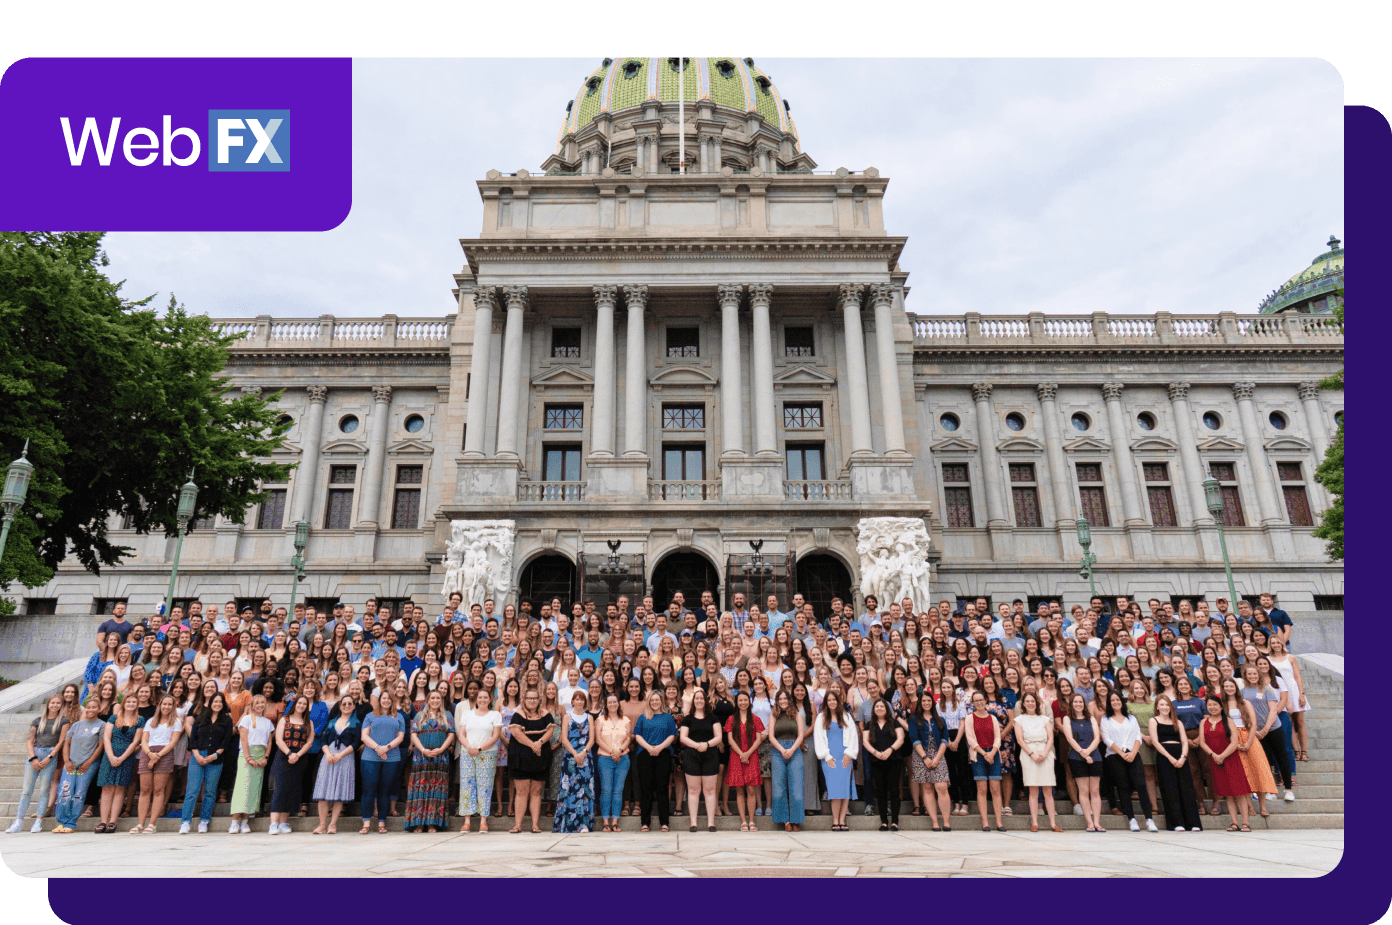 Foto de grupo grande delante de un edificio del capitolio, logotipo de WebFX en una esquina